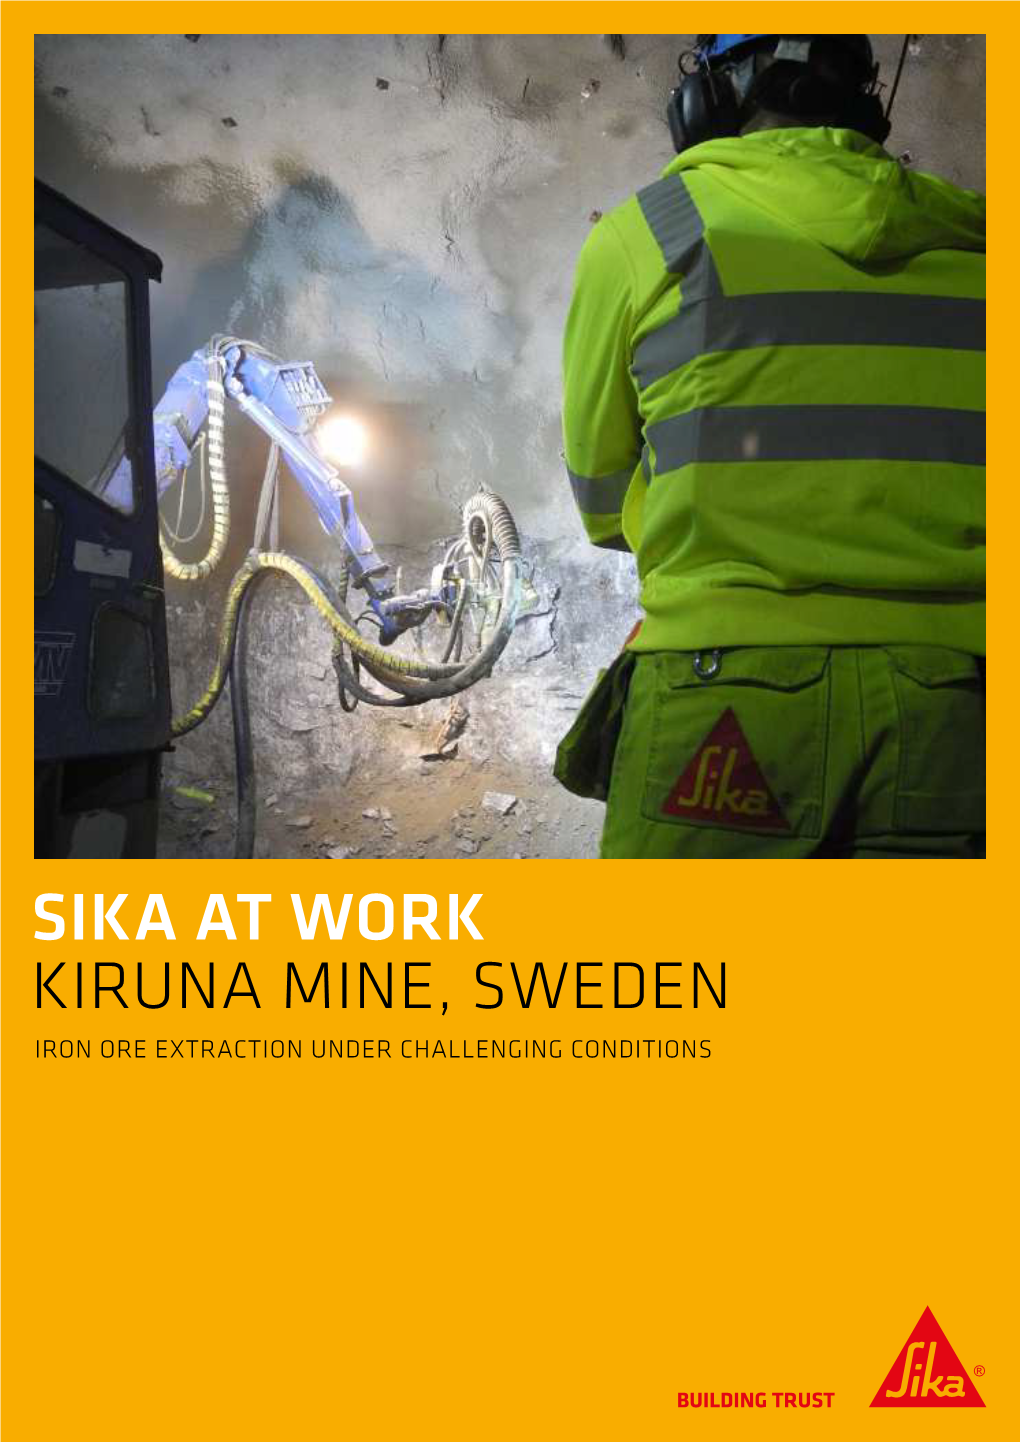 Kiruna Mine, Sweden Iron Ore Extraction Under Challenging Conditions Iron Ore Extraction Under Challenging Conditions